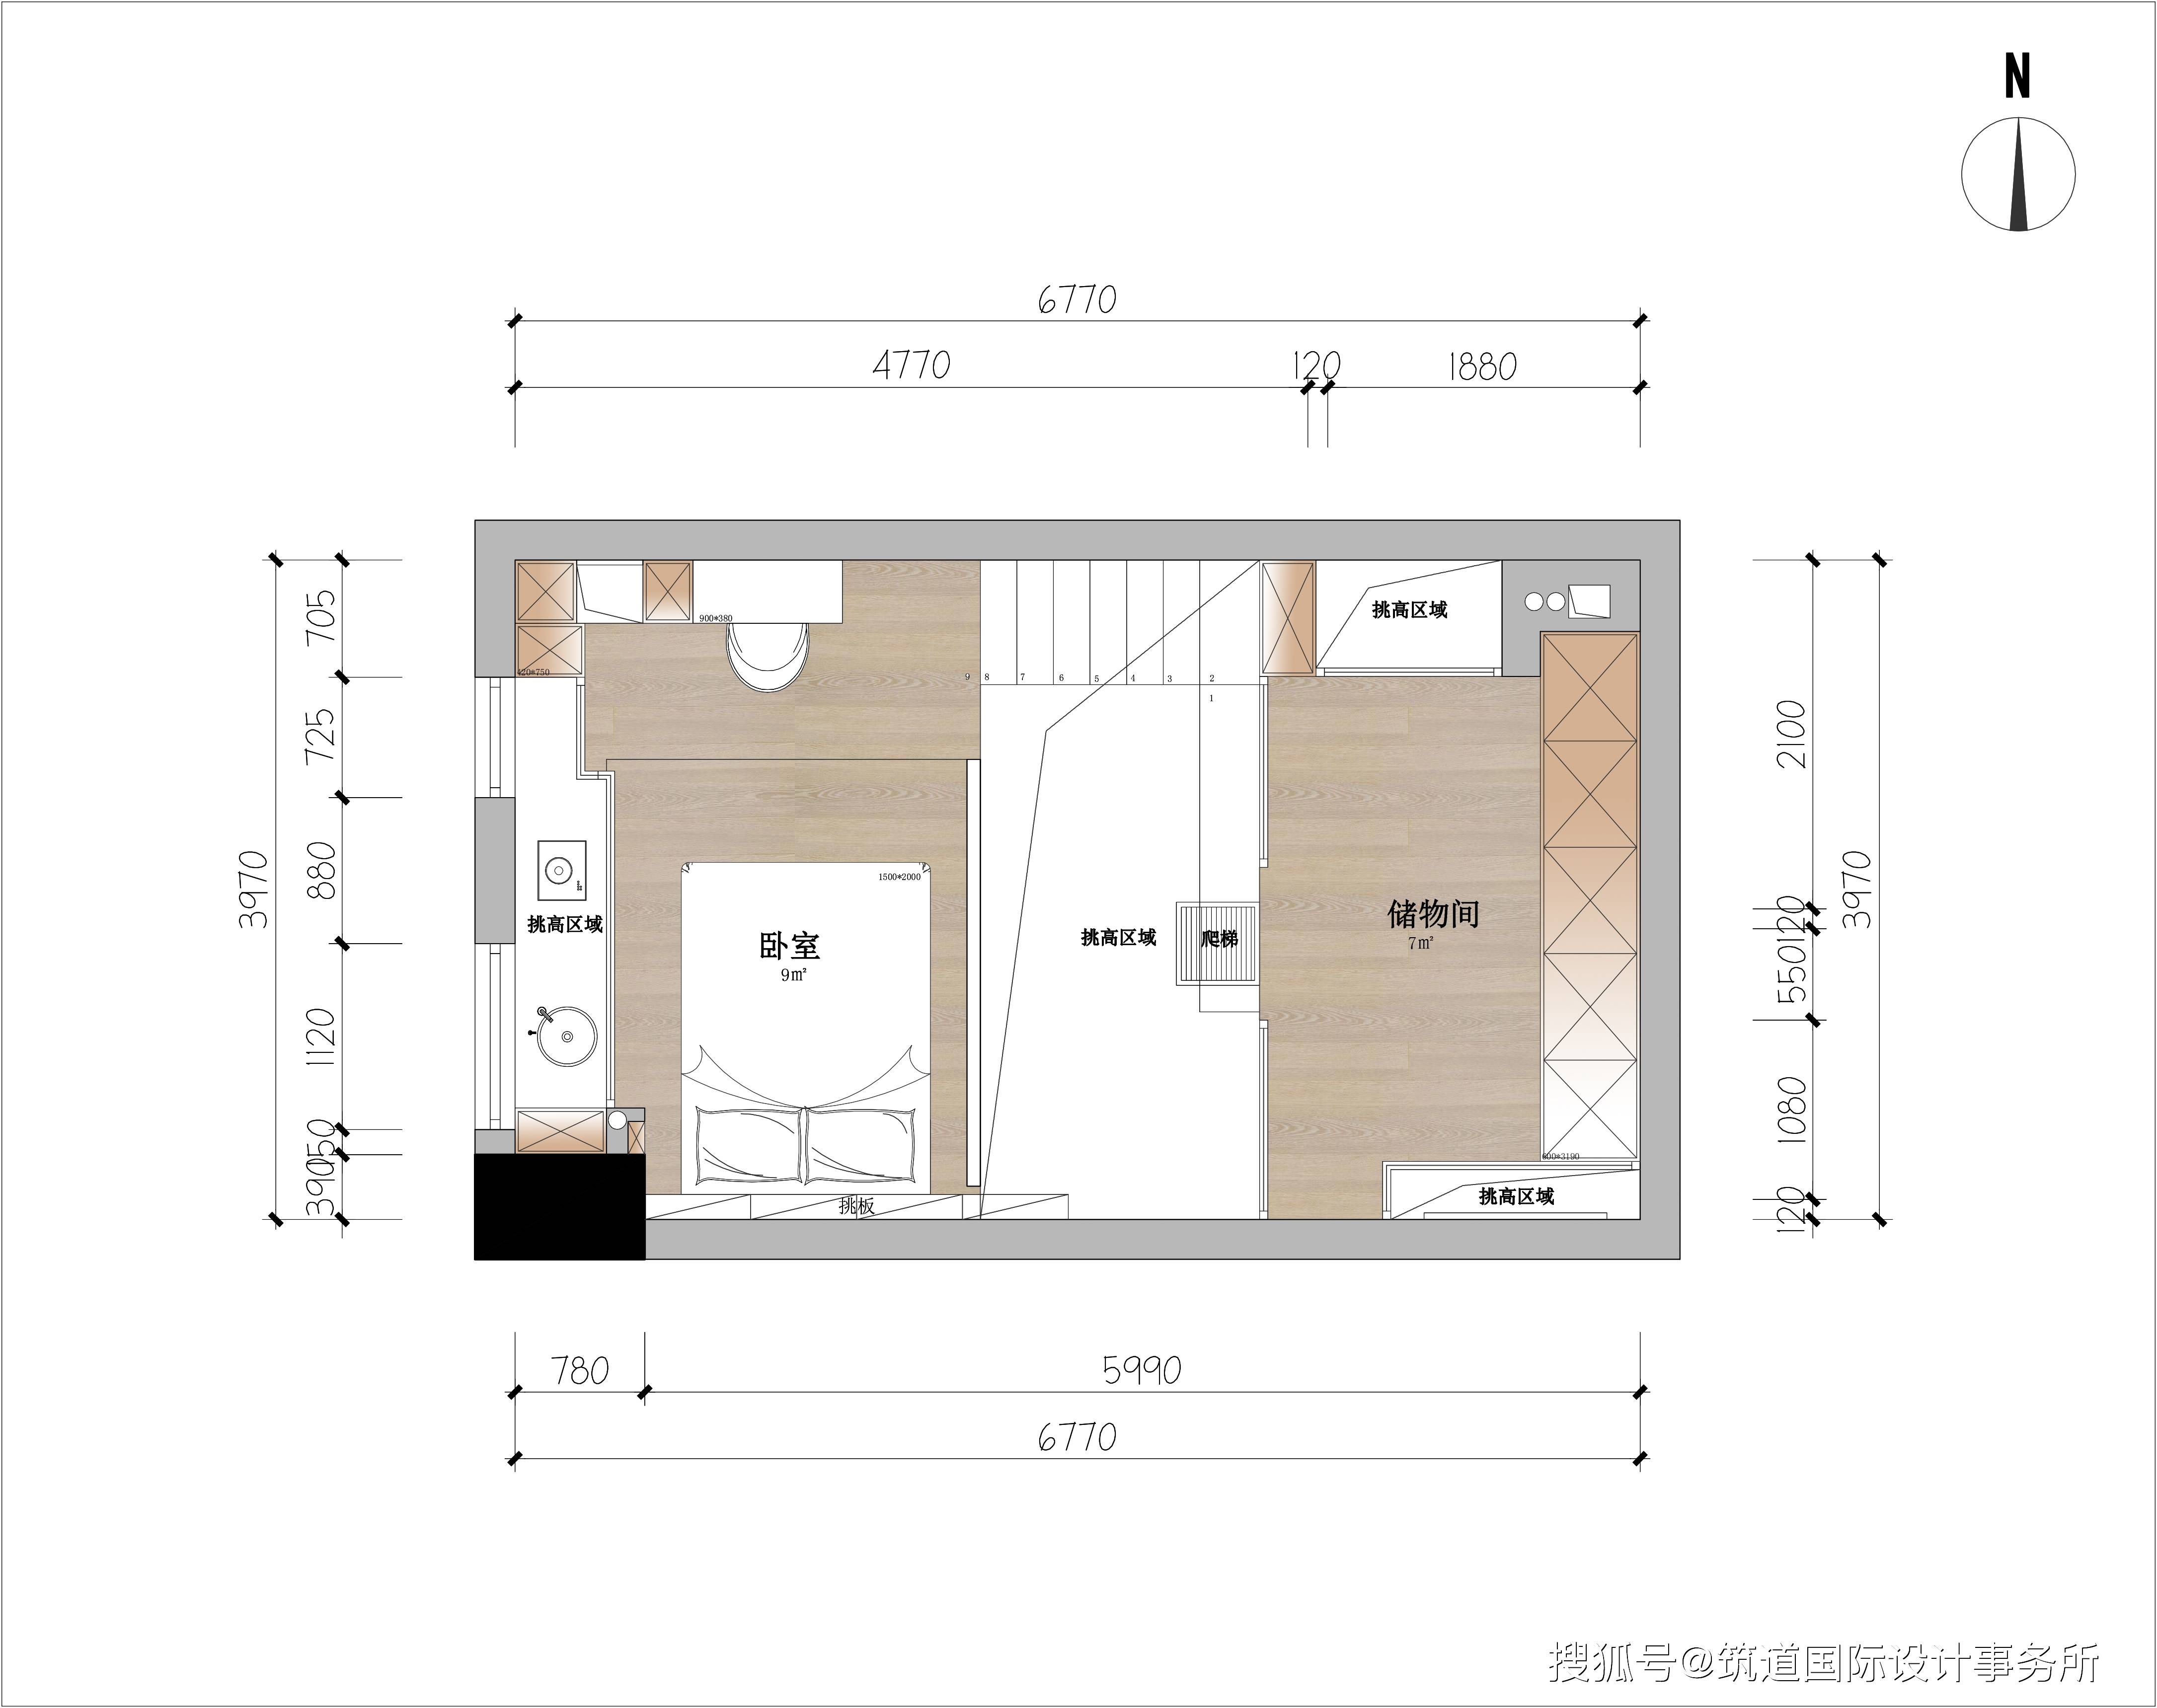 一楼平面布置图 二楼平面布置图 1f的空间要包含厨房,客厅,卫生间和